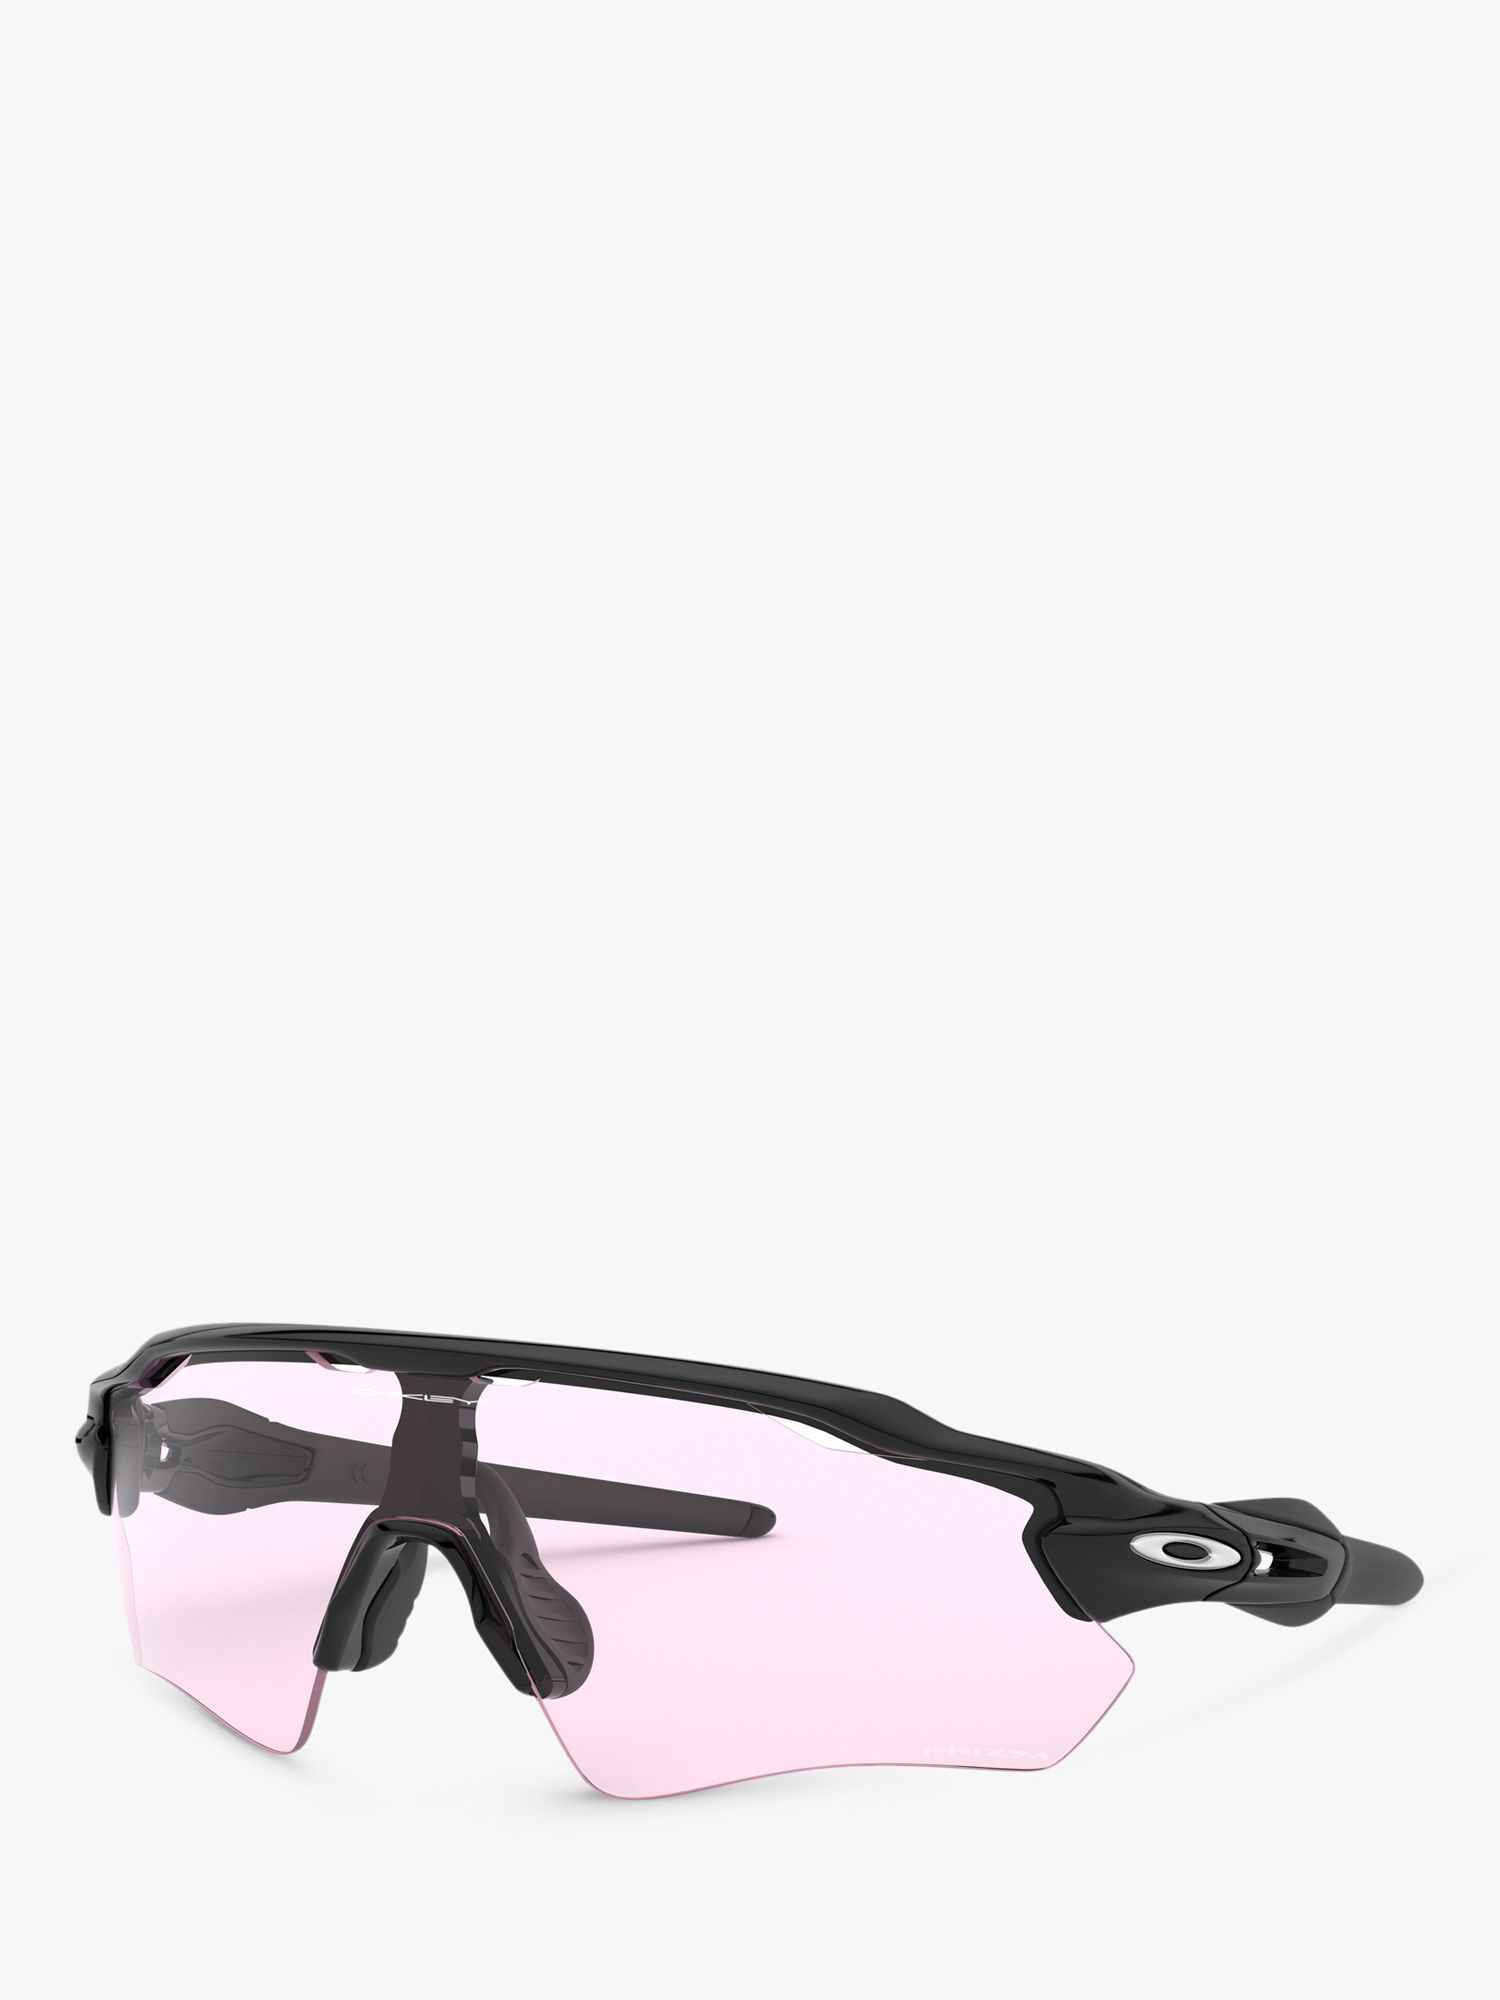 Oakley OO9208 Men's Radar EV Path Wrap Sunglasses, Black/Clear Pink